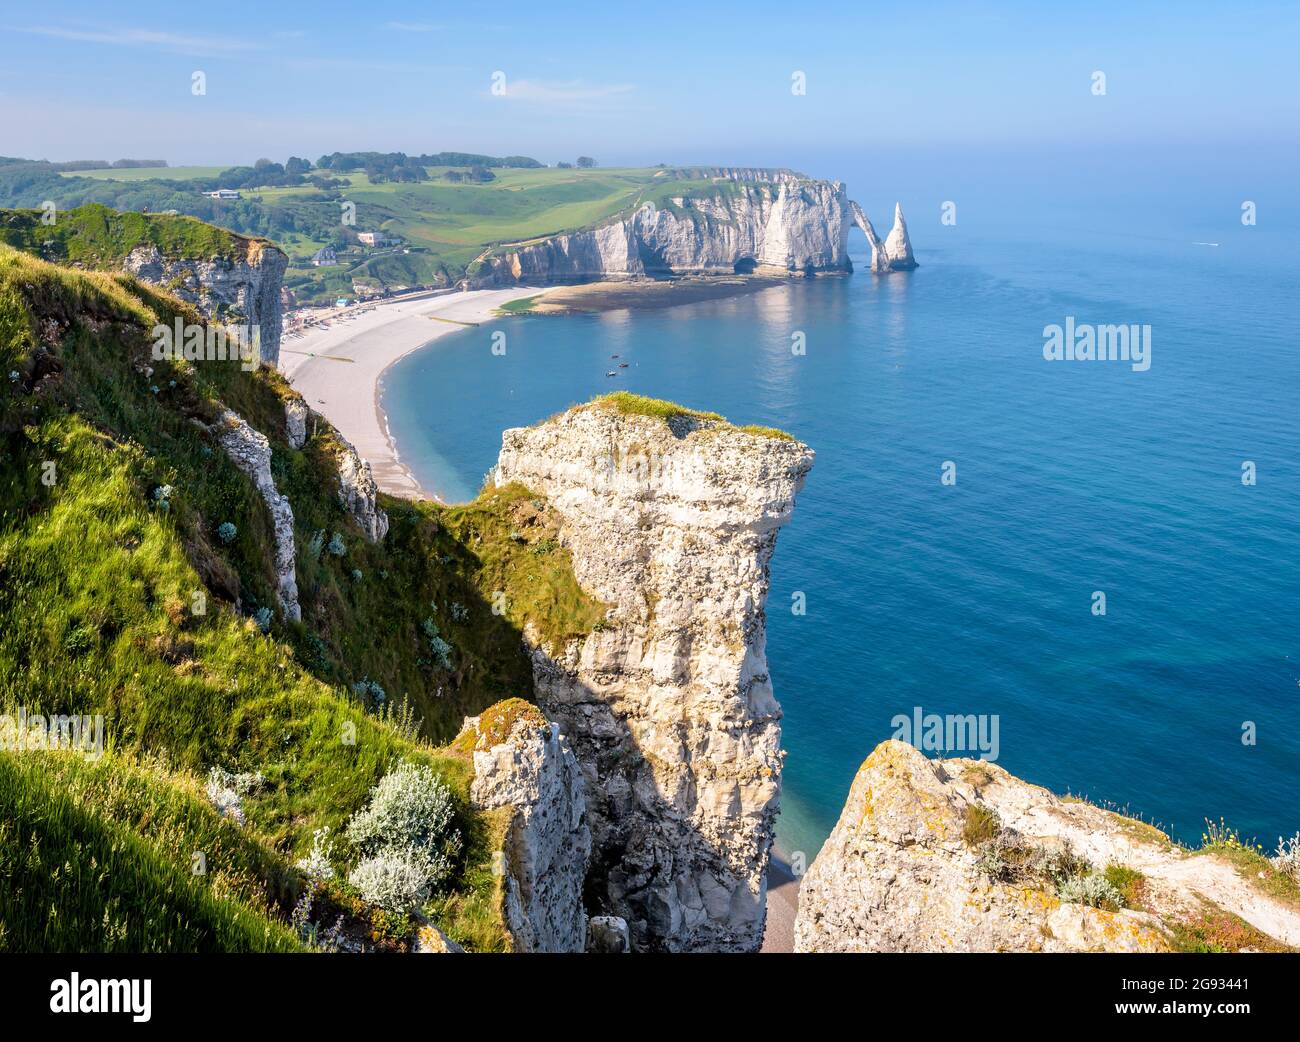 Der Strand und die Aval-Klippe in Etretat, Normandie, mit dem Bogen und der Nadel von der Amont-Klippe aus gesehen, mit Kreidepitonen im Vordergrund. Stockfoto